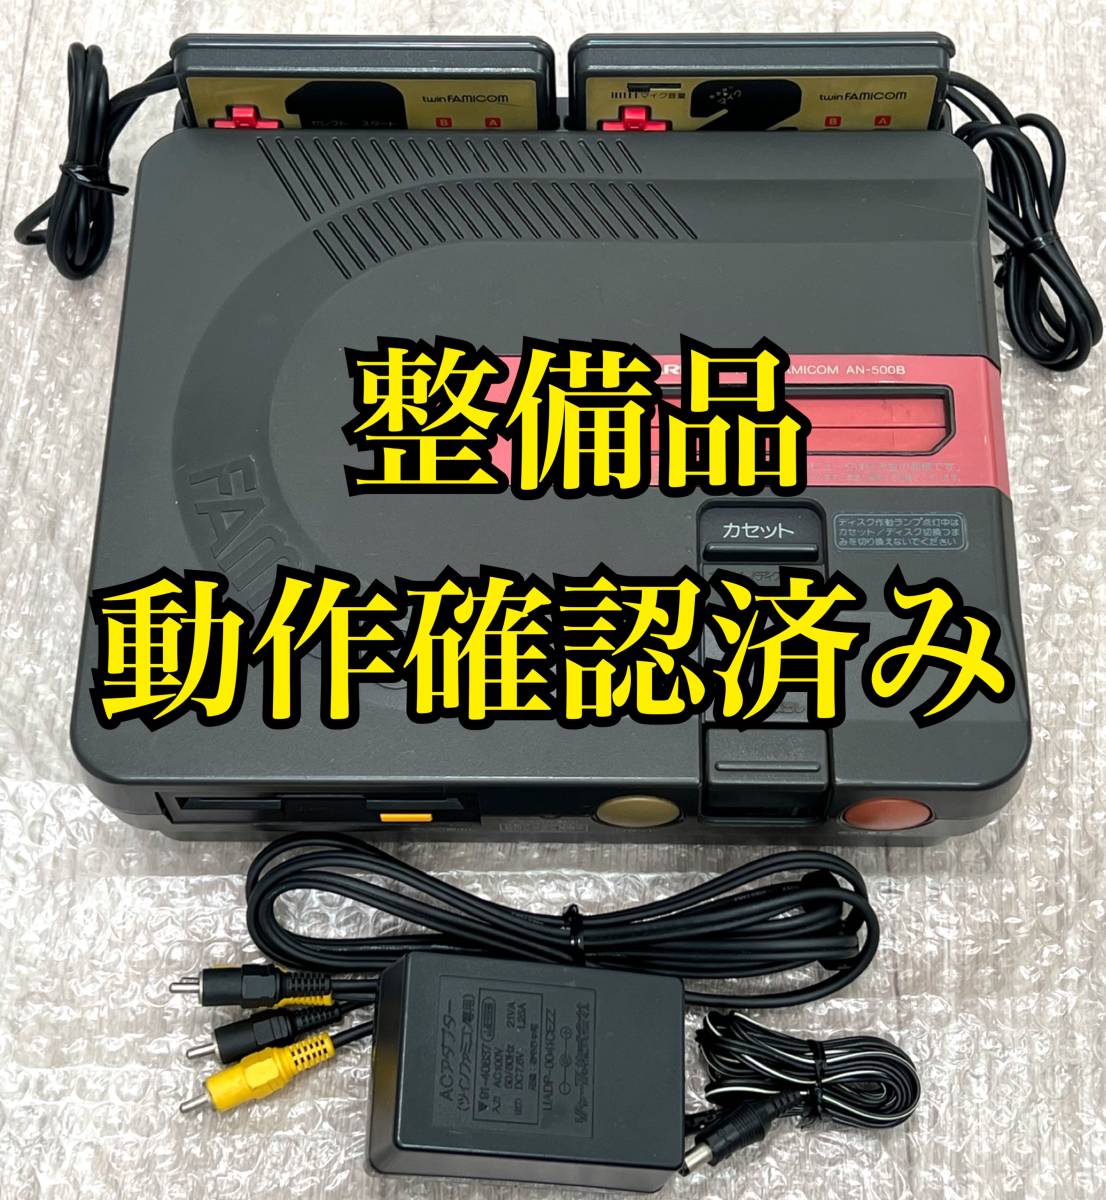 〈整備品・動作確認済み〉FC SHARP ツインファミコン 本体 AN-500B ブラック TWIN FAMICOM シャープ ファミリーコンピュータ NES